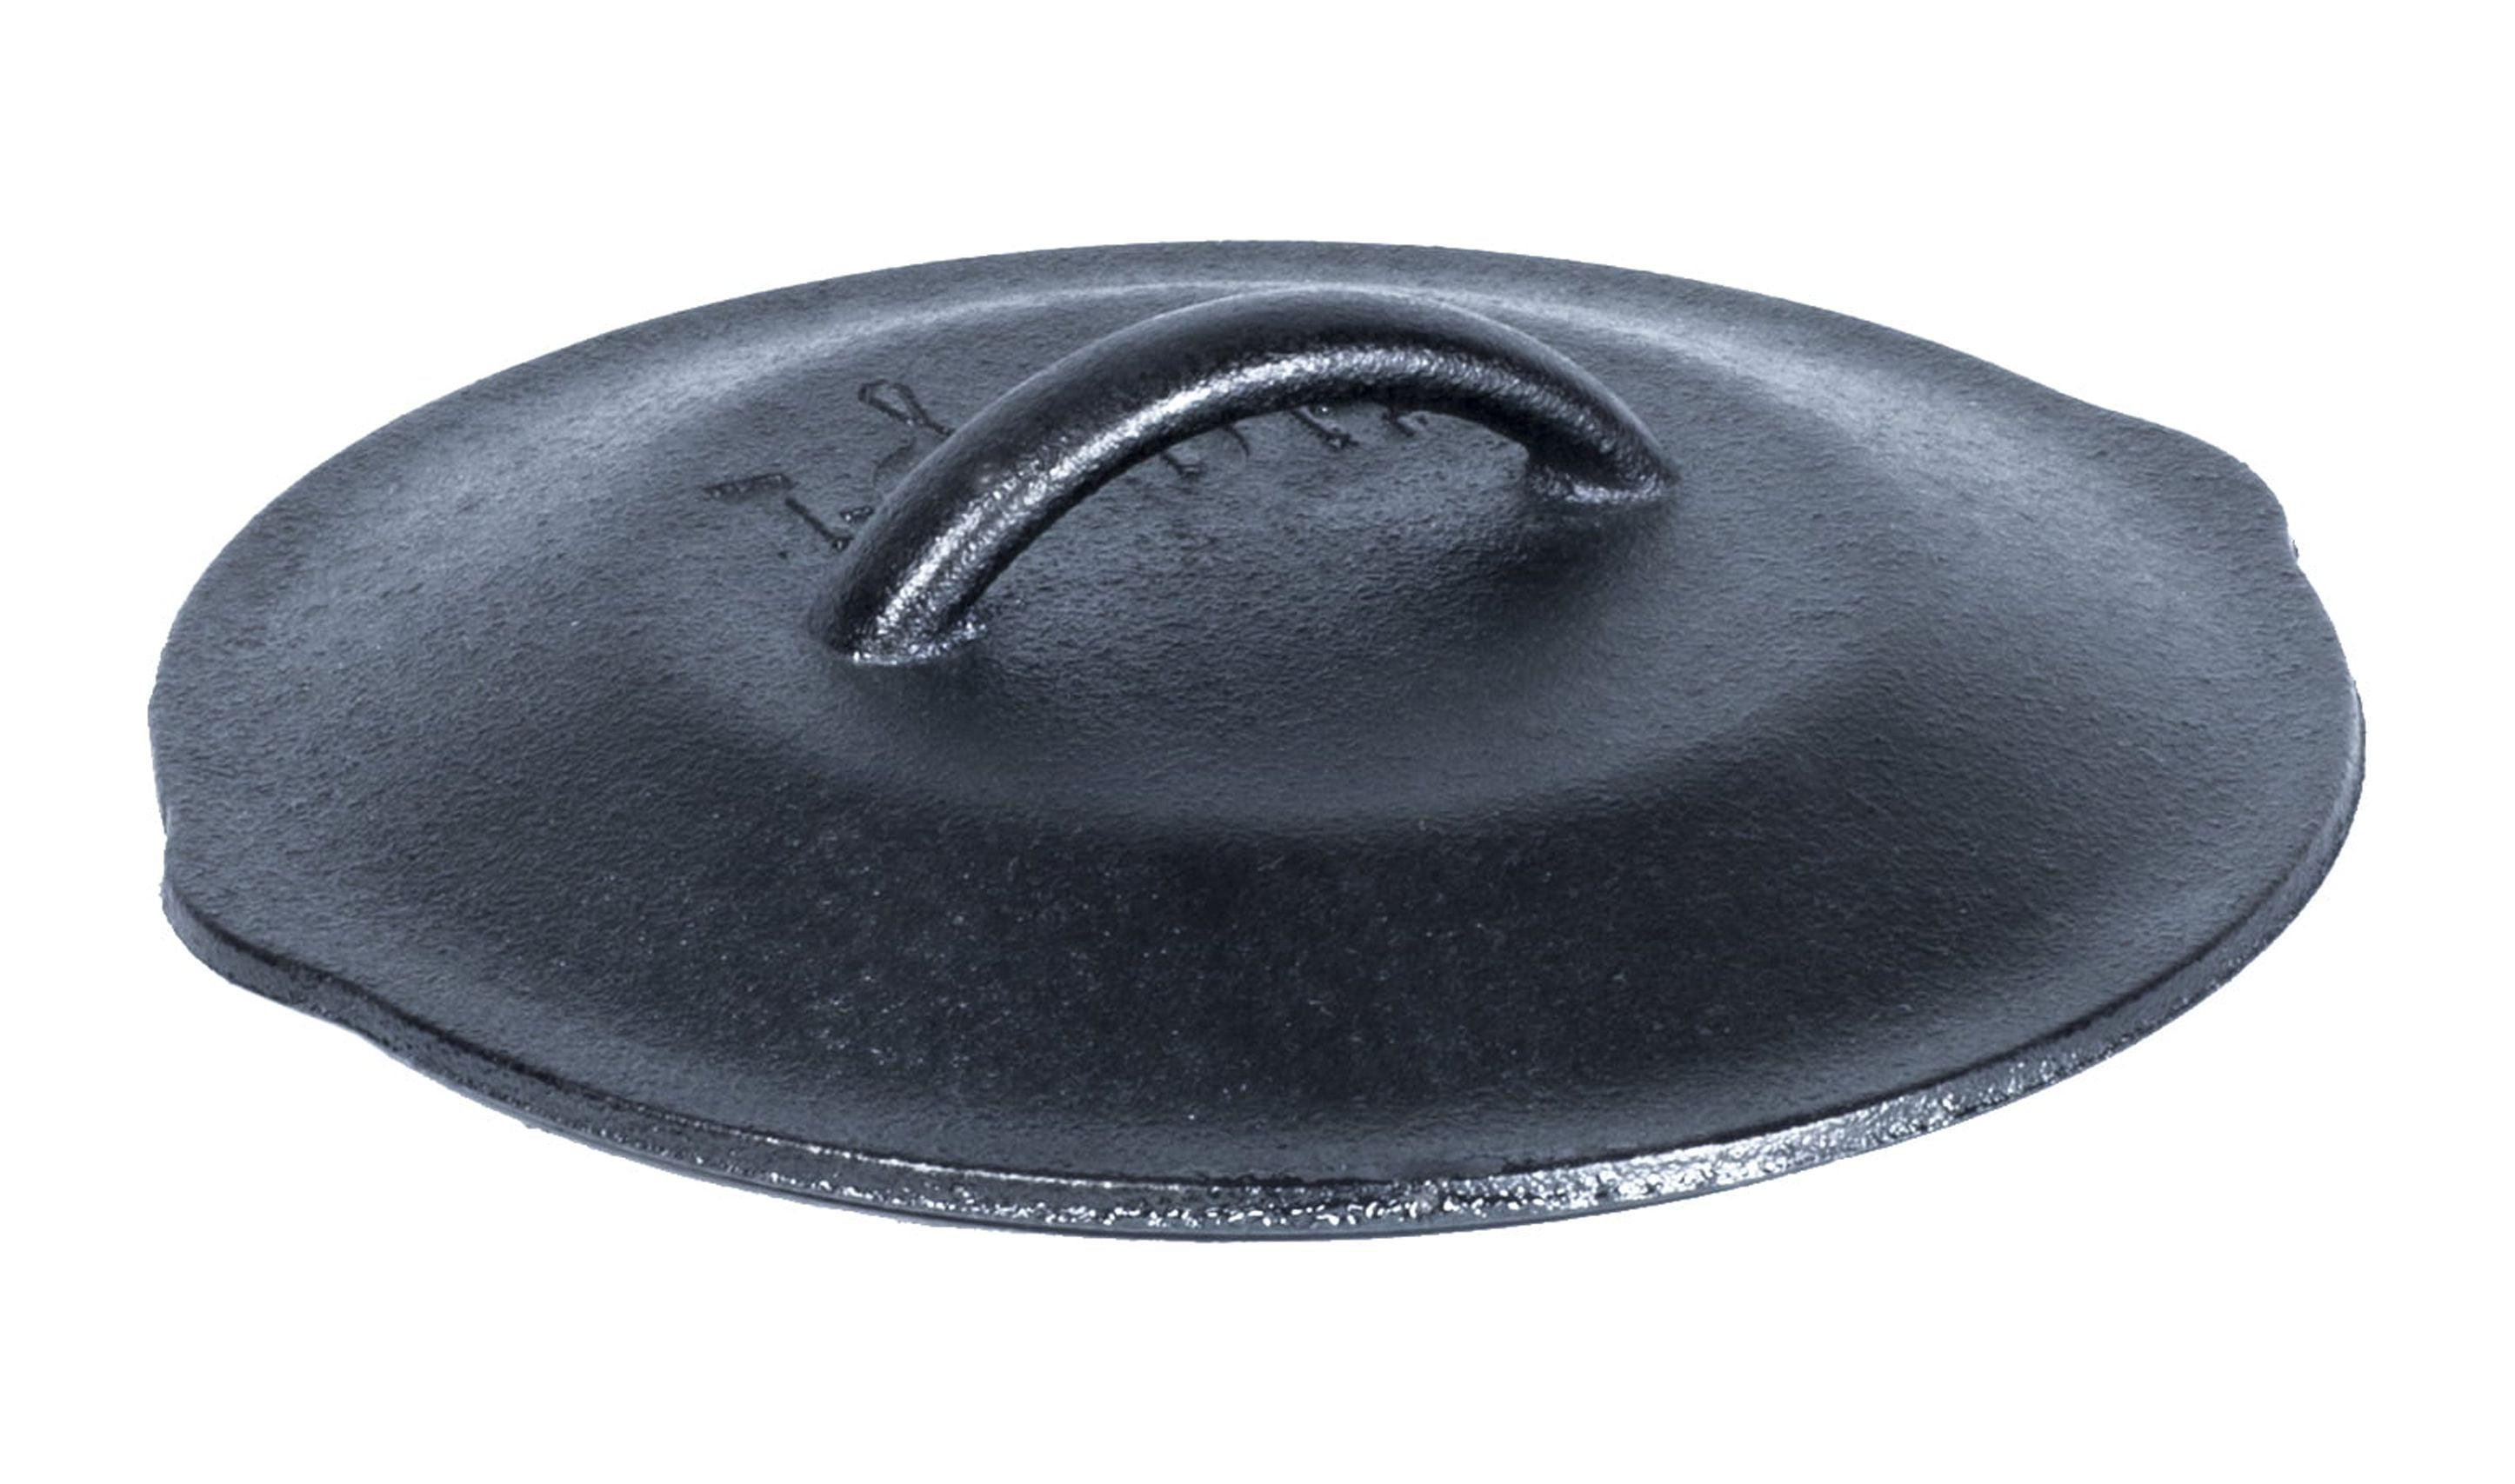 Libbey CIS-25 9 oz. Mini Cast Iron Pot with Cover - 12/Case